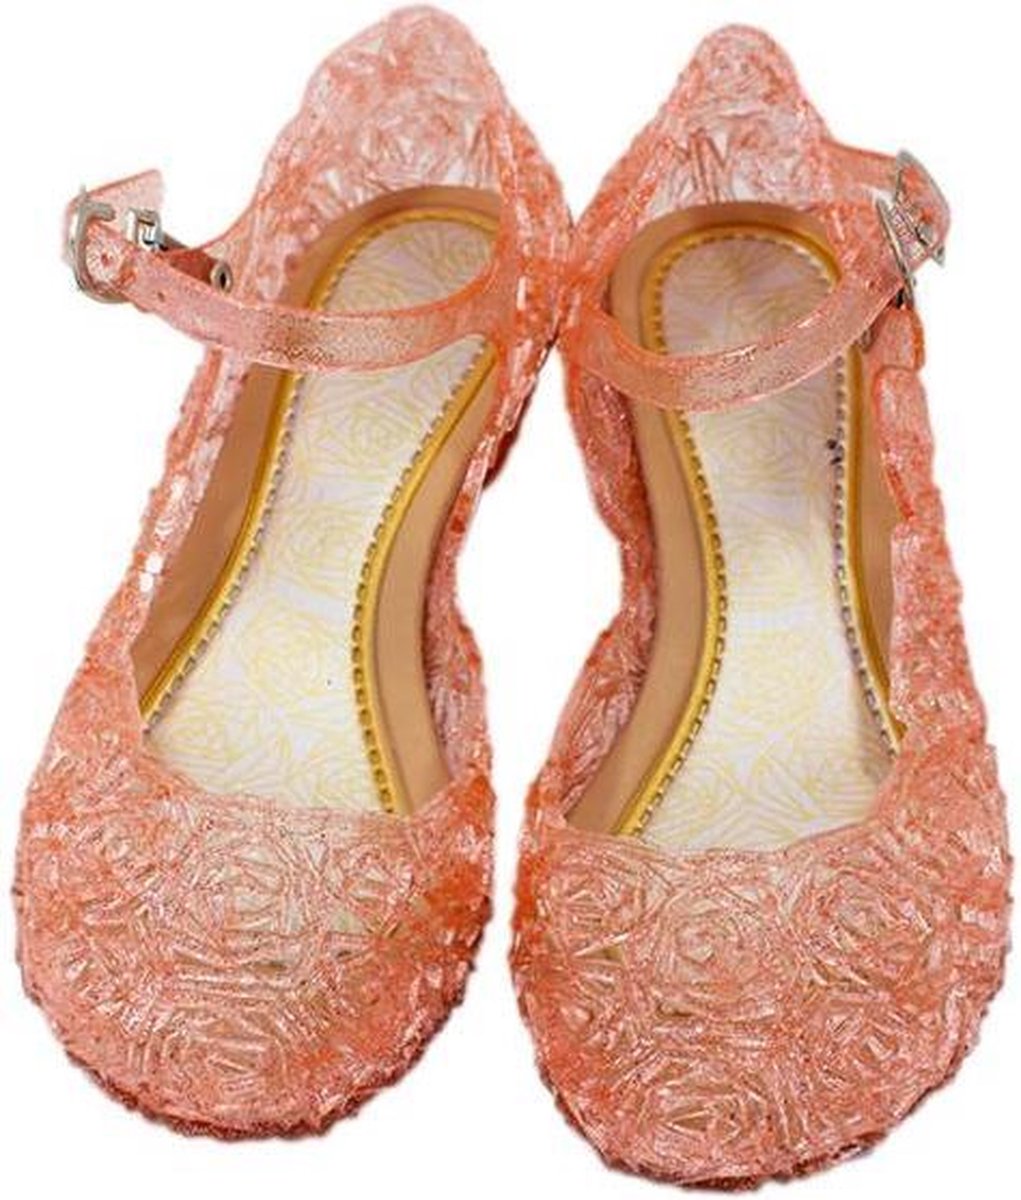 Prinsessen glitter schoenen met hak - Roze - Prinsessen - Verkleedschoenen - Frozen - Rapunzel - Doornroosje - Ariel - Assepoester -  Elsa - Anna - Jurk -  Maat 31 (valt als 29) Binnenzool: 18,5 cm